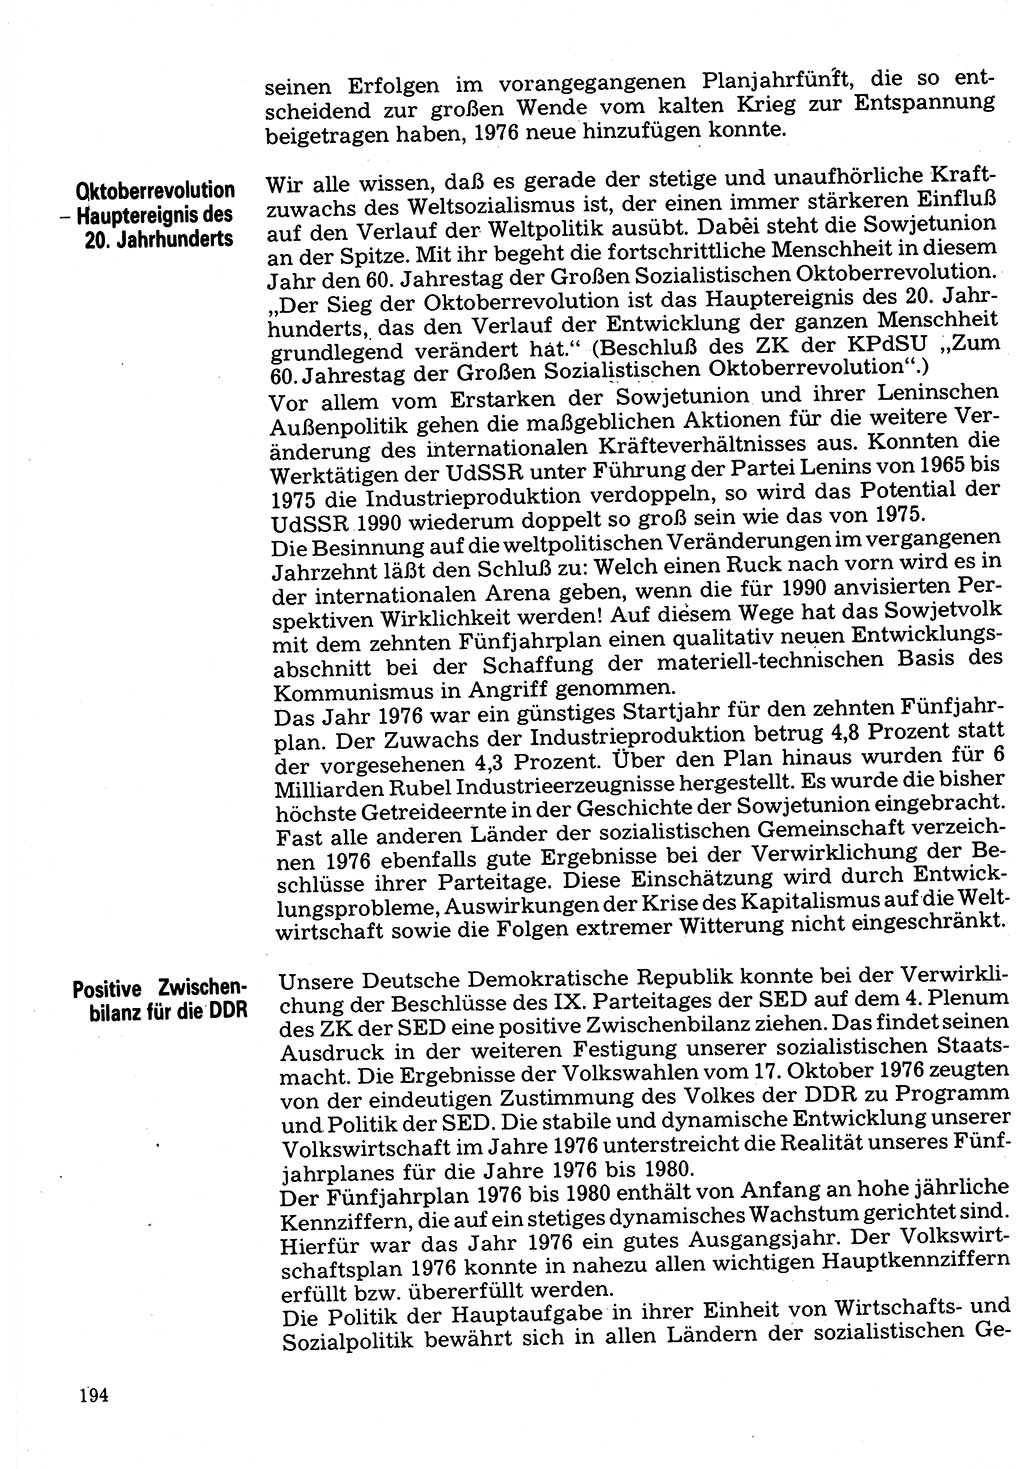 Neuer Weg (NW), Organ des Zentralkomitees (ZK) der SED (Sozialistische Einheitspartei Deutschlands) für Fragen des Parteilebens, 32. Jahrgang [Deutsche Demokratische Republik (DDR)] 1977, Seite 194 (NW ZK SED DDR 1977, S. 194)